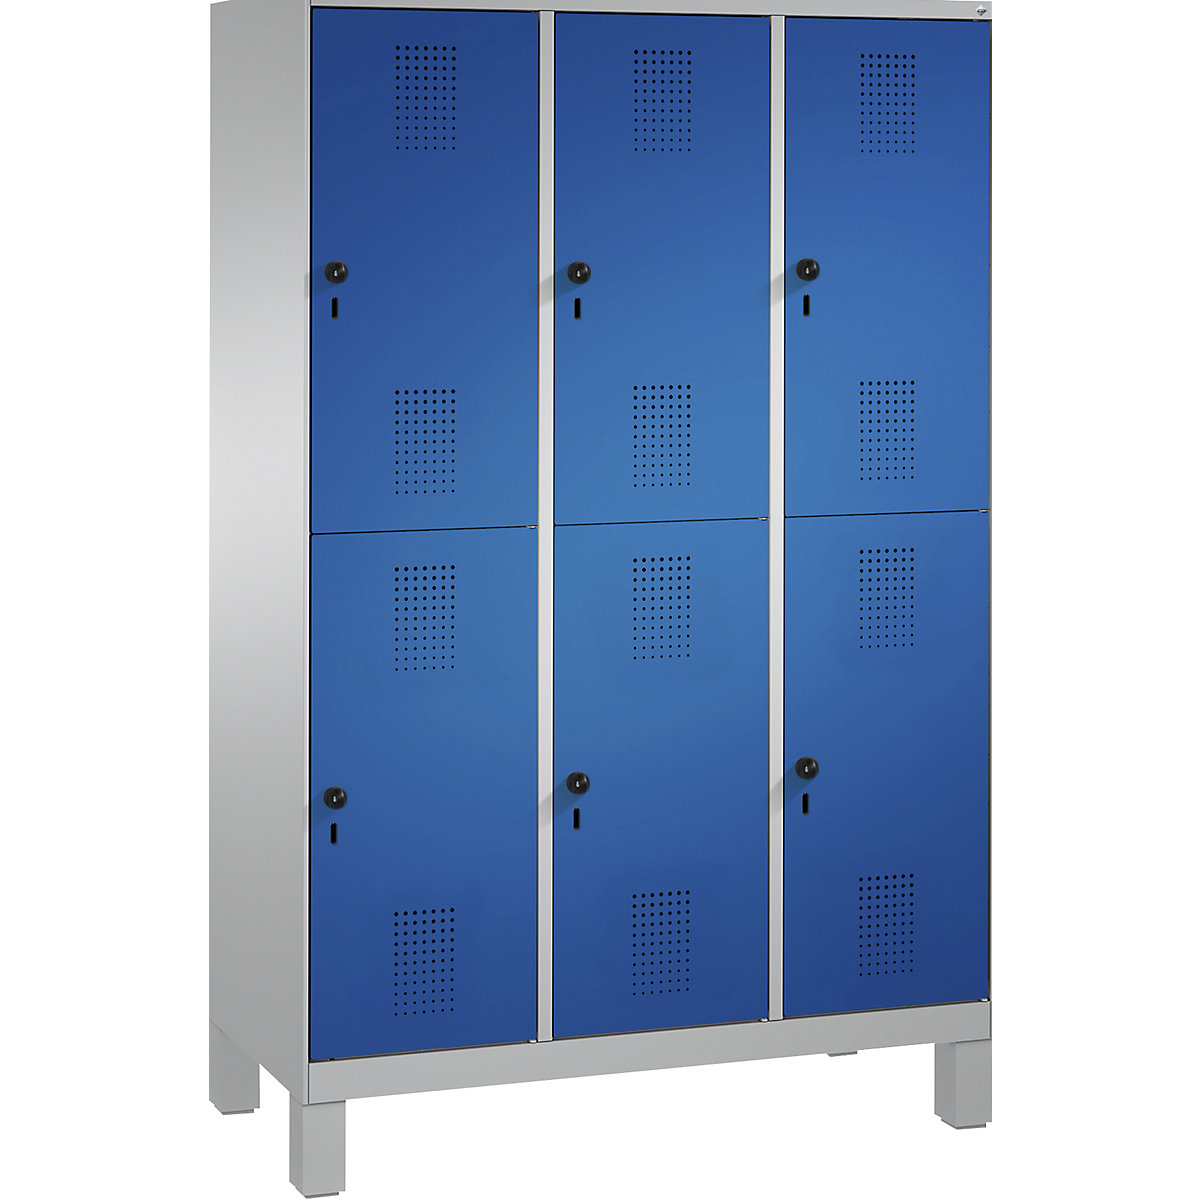 Penderie sur pieds EVOLO à deux étages – C+P, 3 compartiments, 2 casiers chacun, largeur compartiments 400 mm, aluminium / bleu gentiane-2